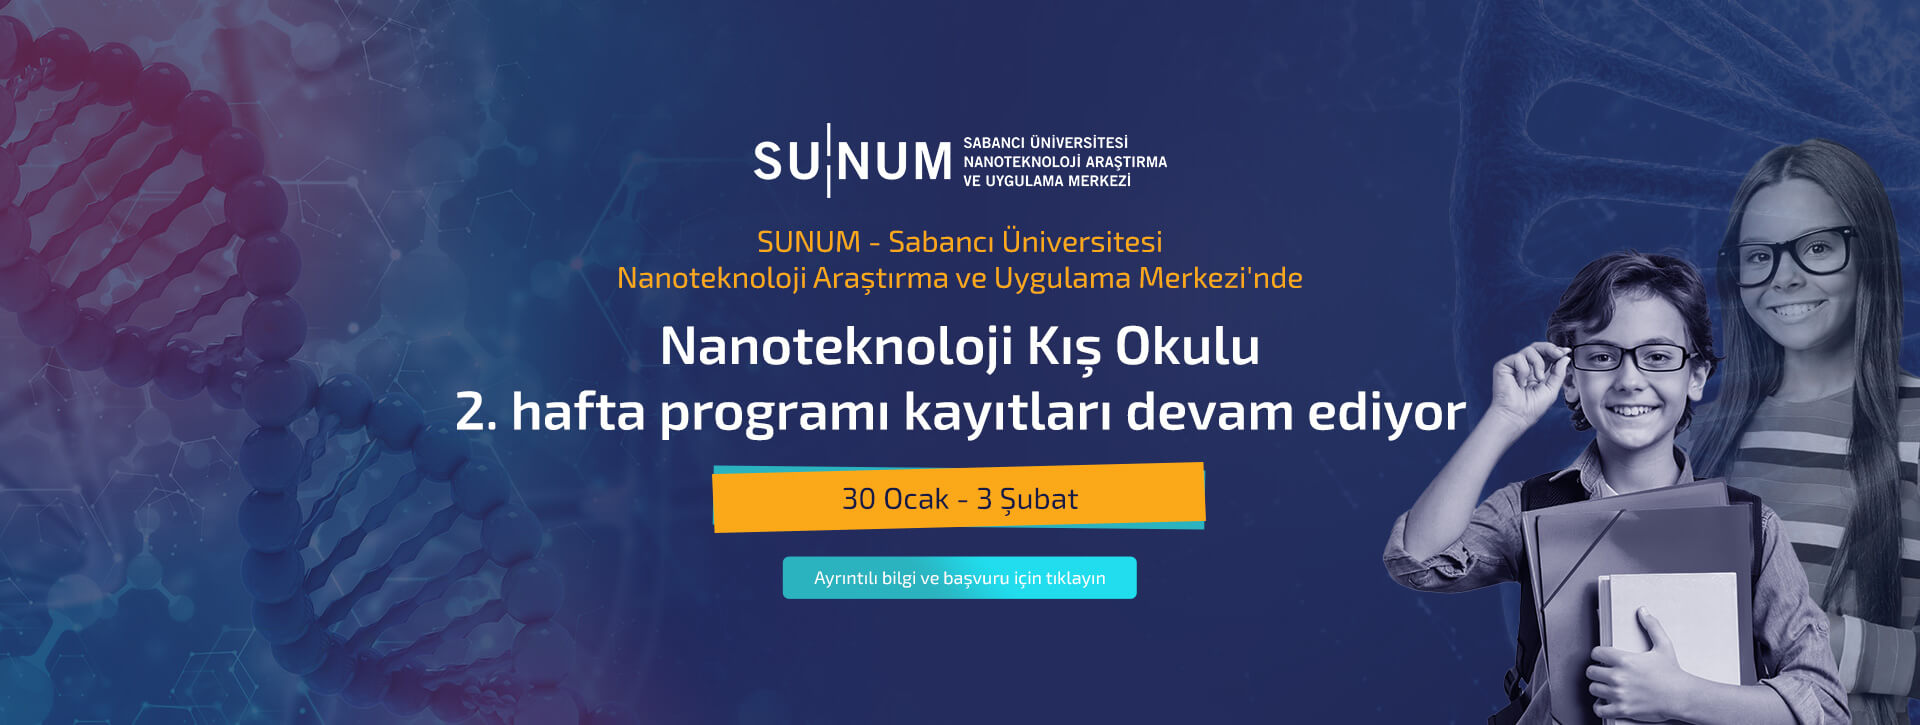 SUNUM - Sabancı Üniversitesi Nanoteknoloji Araştırma ve Uygulama Merkezi'nde Nanoteknoloji Kış Okulu 2. hafta programı kayıtları devam ediyor.